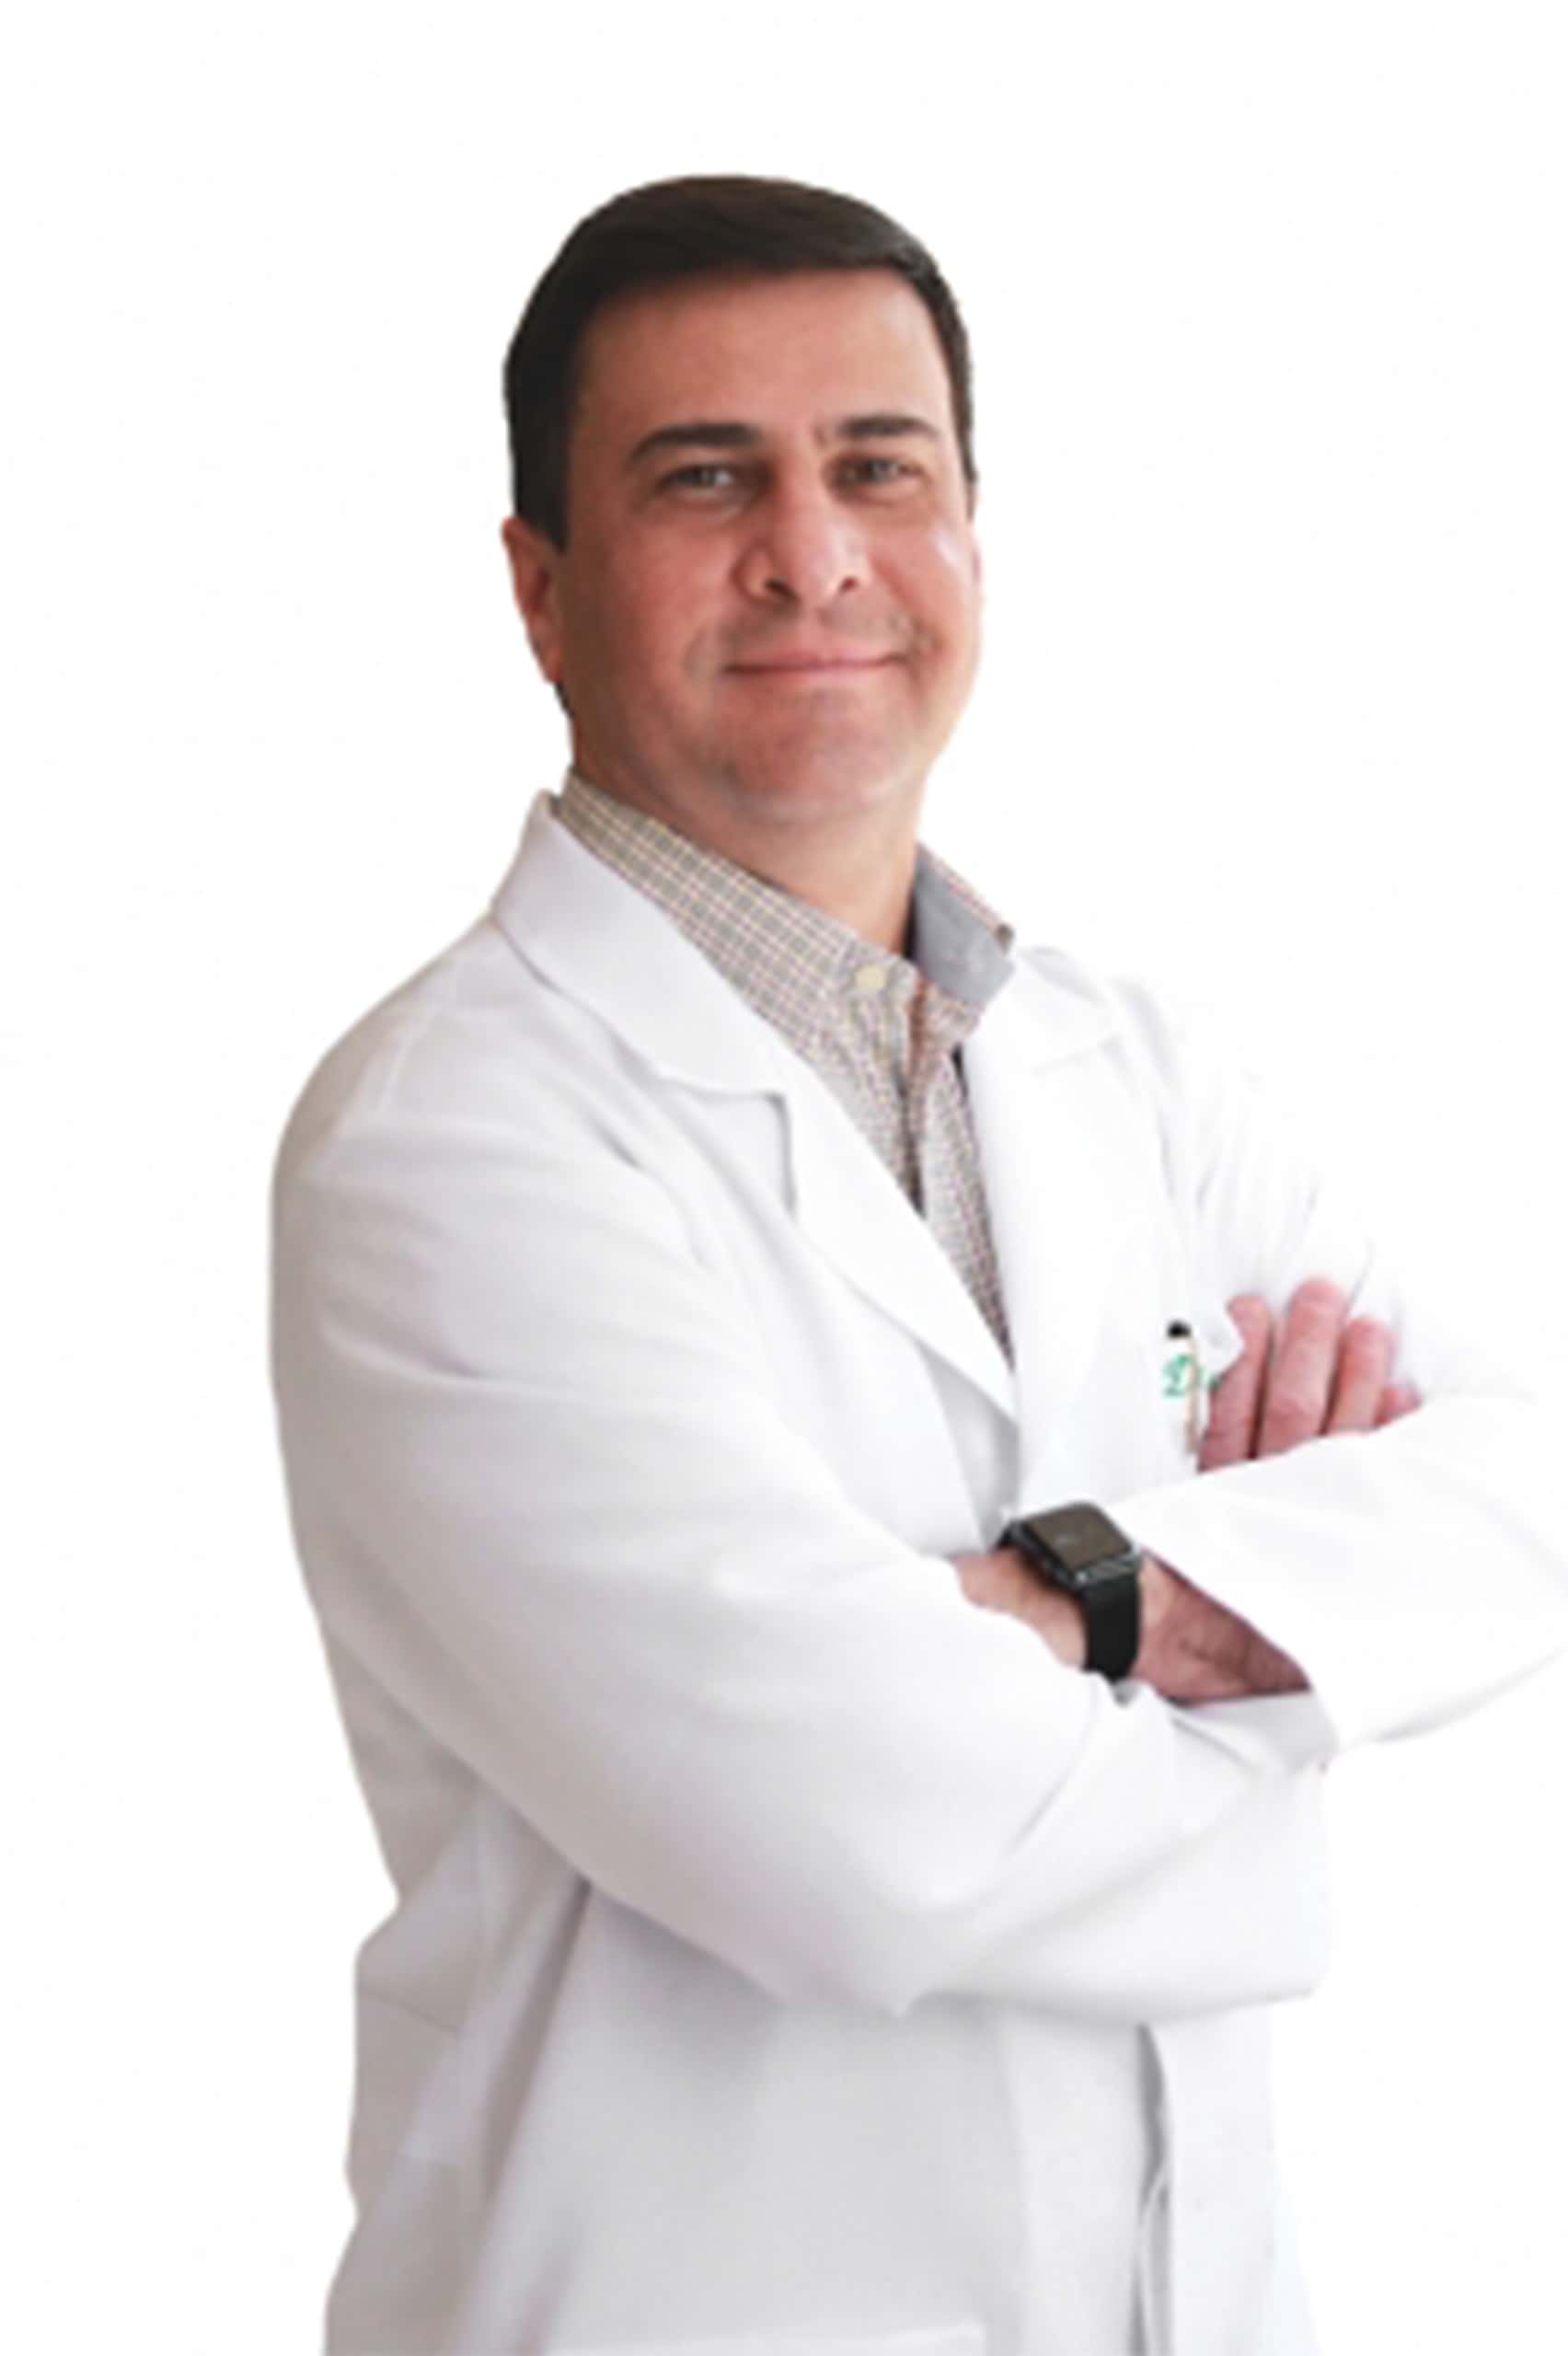 Dr. Cassiano Casagrande